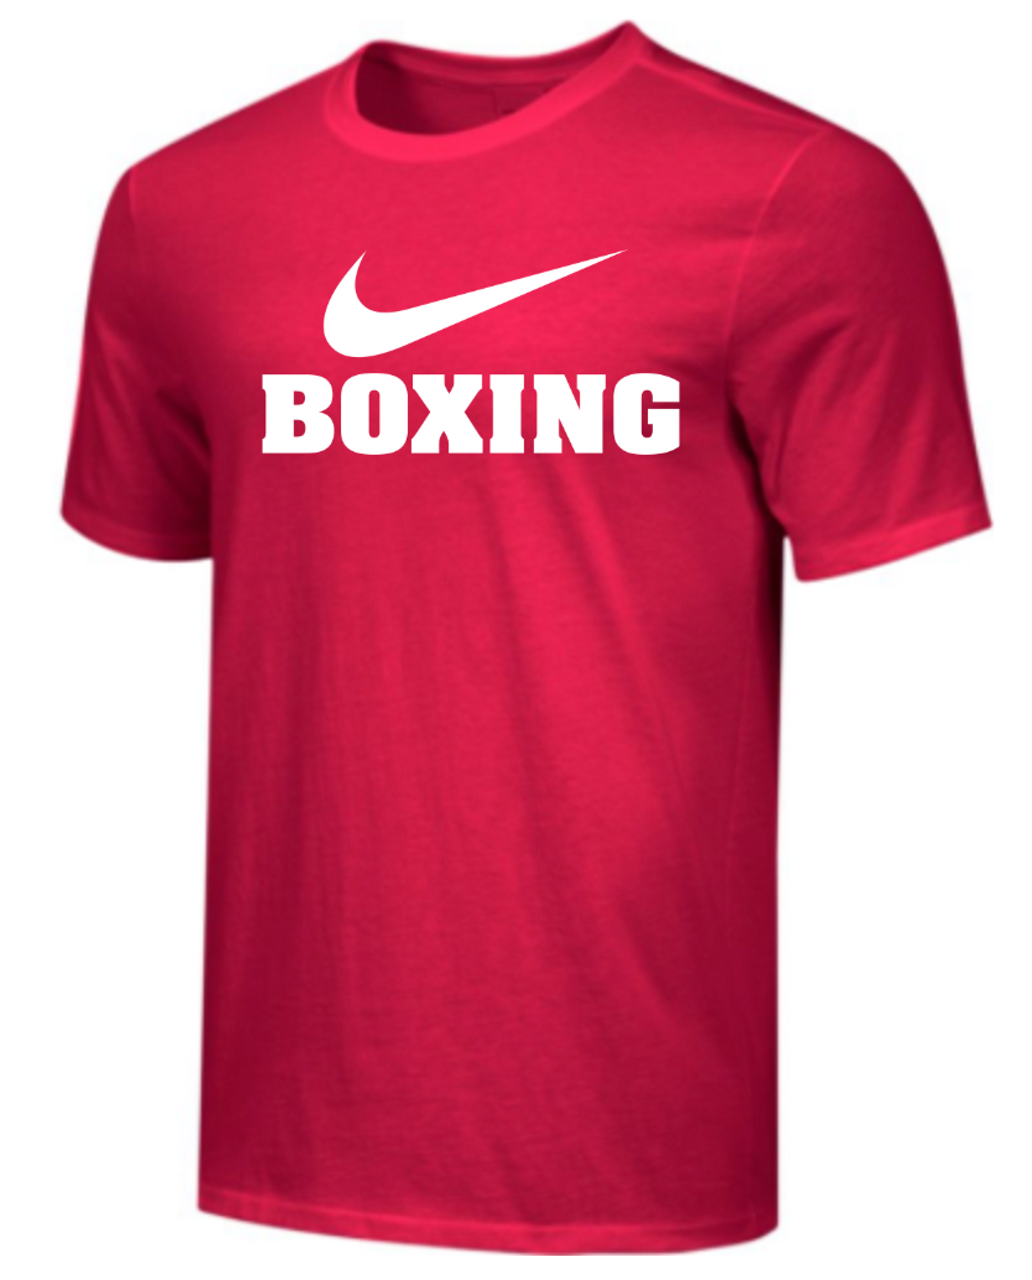 Nike Boxing футболка. Nike Turkey. Футболки мужские найк бокс ретро. Найк турция сайт